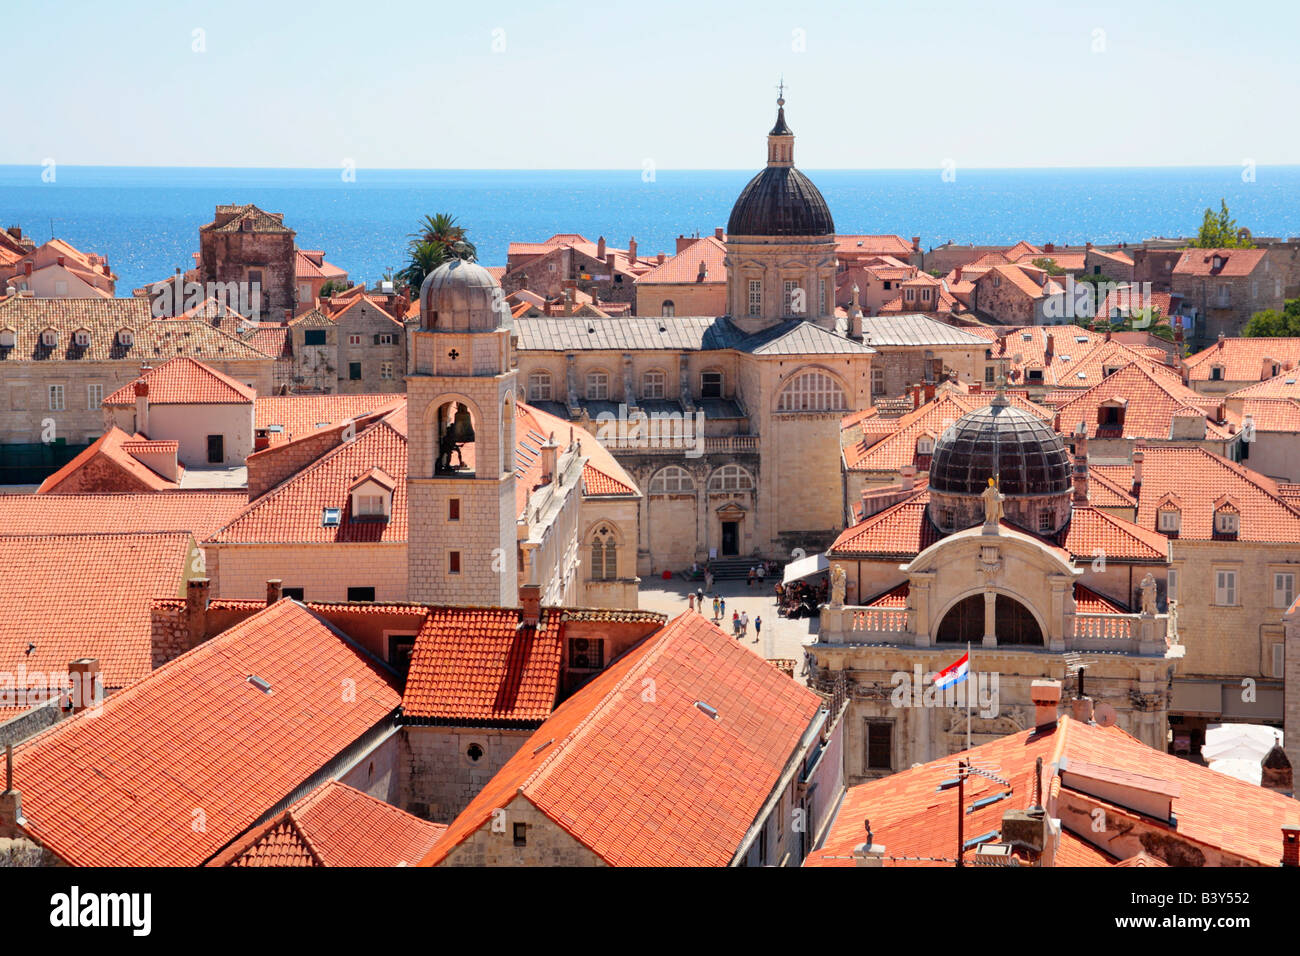 Vue panoramique sur la vieille ville de Dubrovnik, en République de Croatie, l'Europe de l'Est Banque D'Images